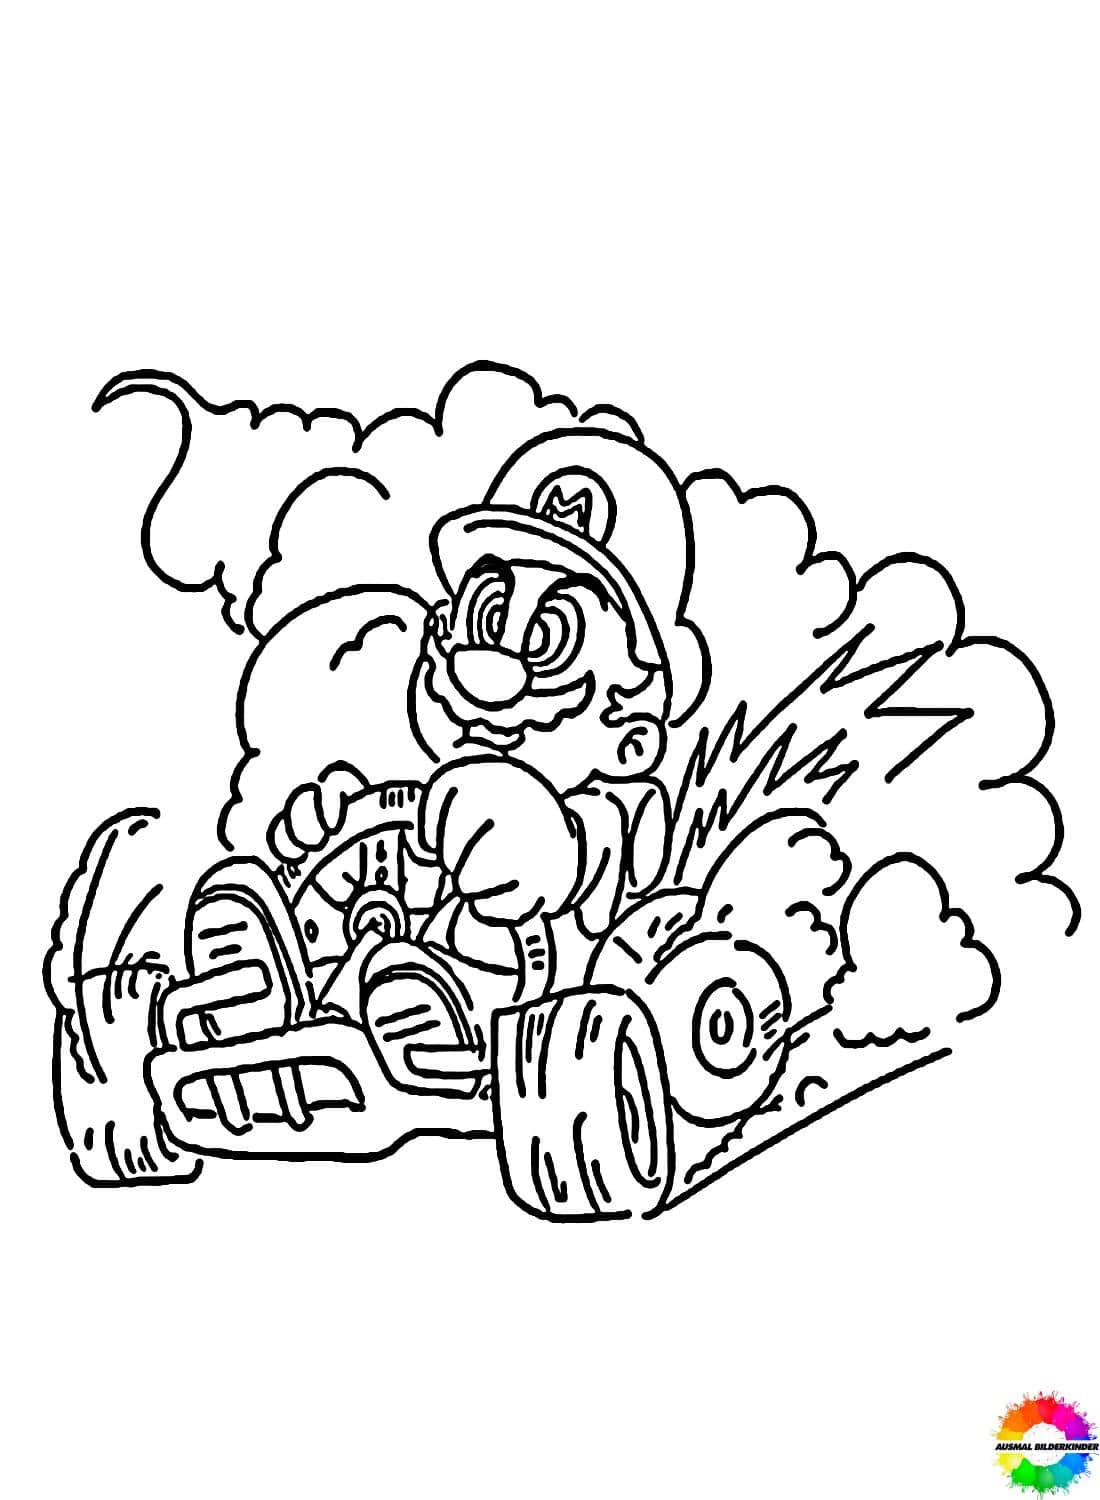 Mario Kart 21